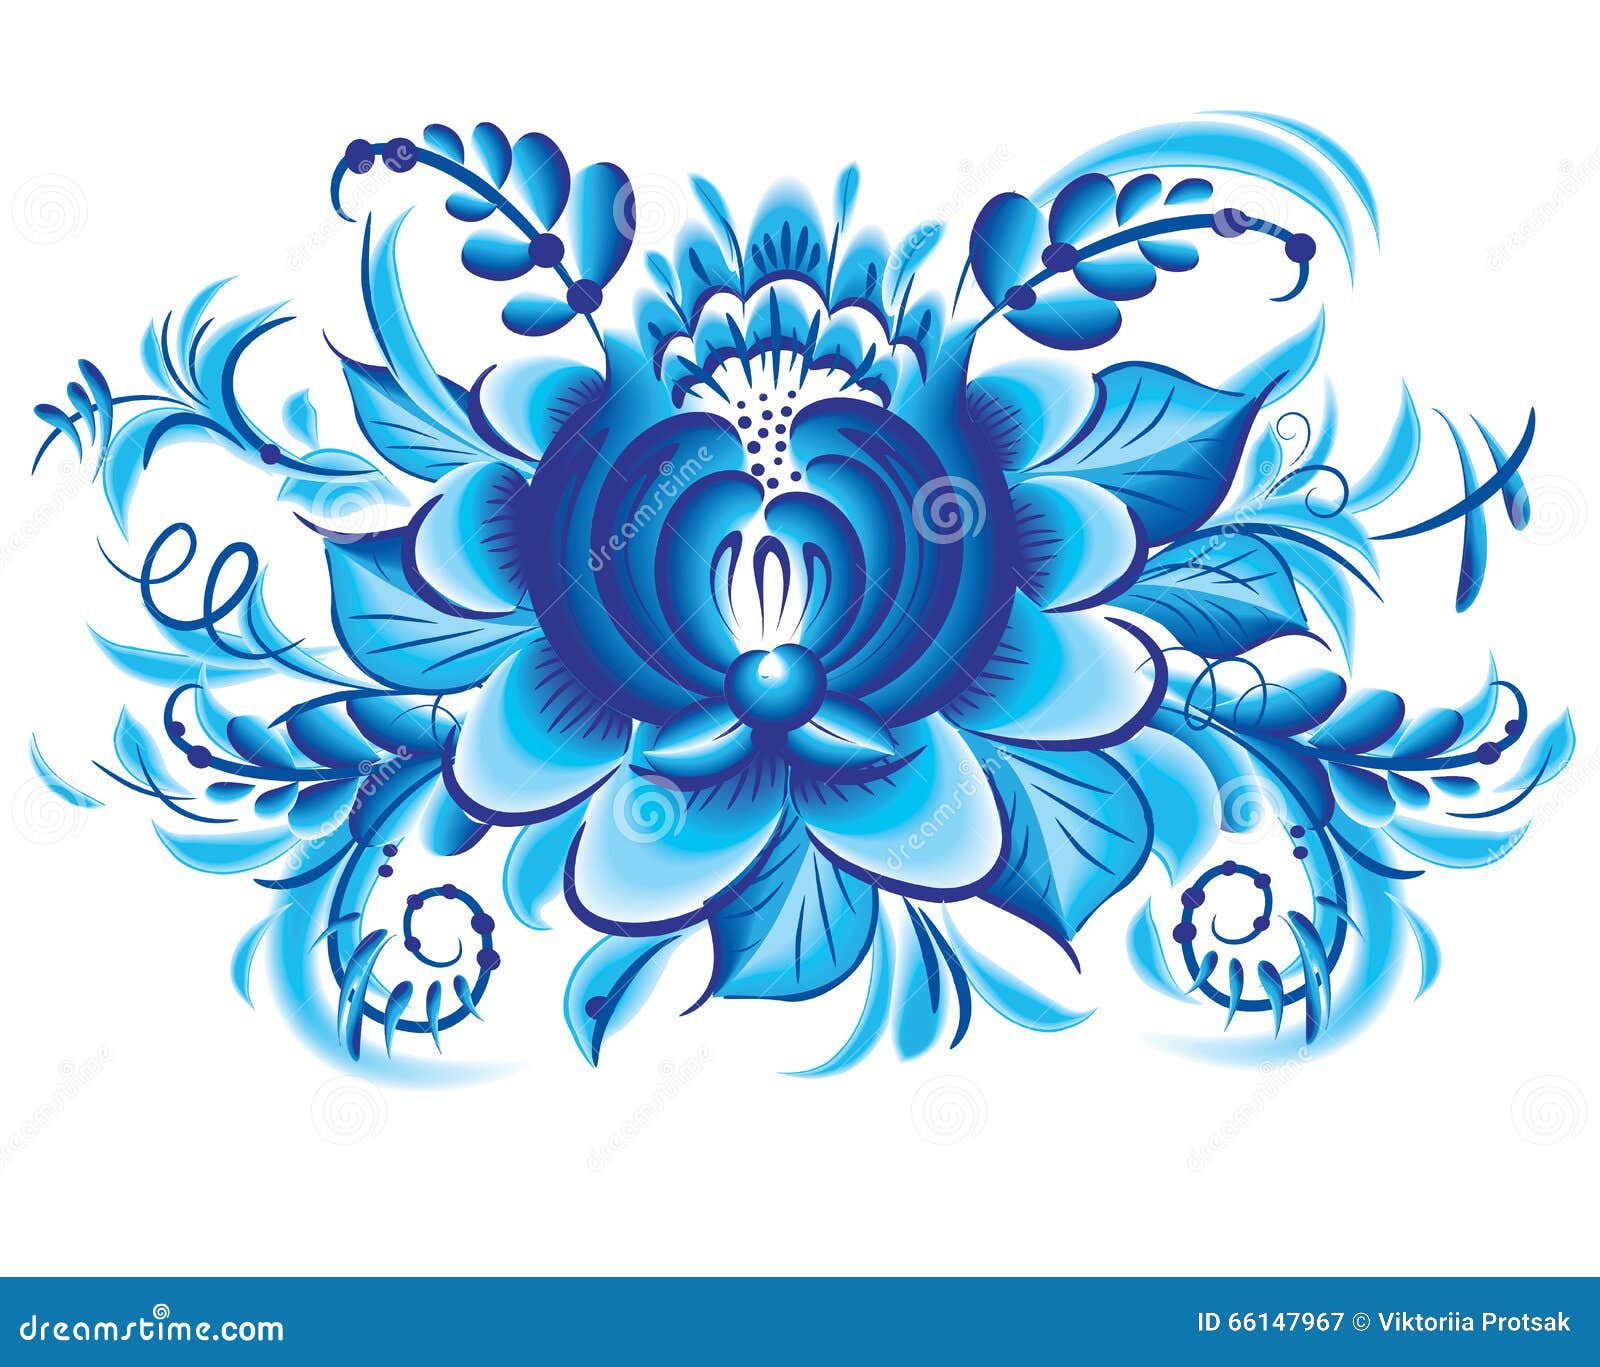 blue flower in gzhel style